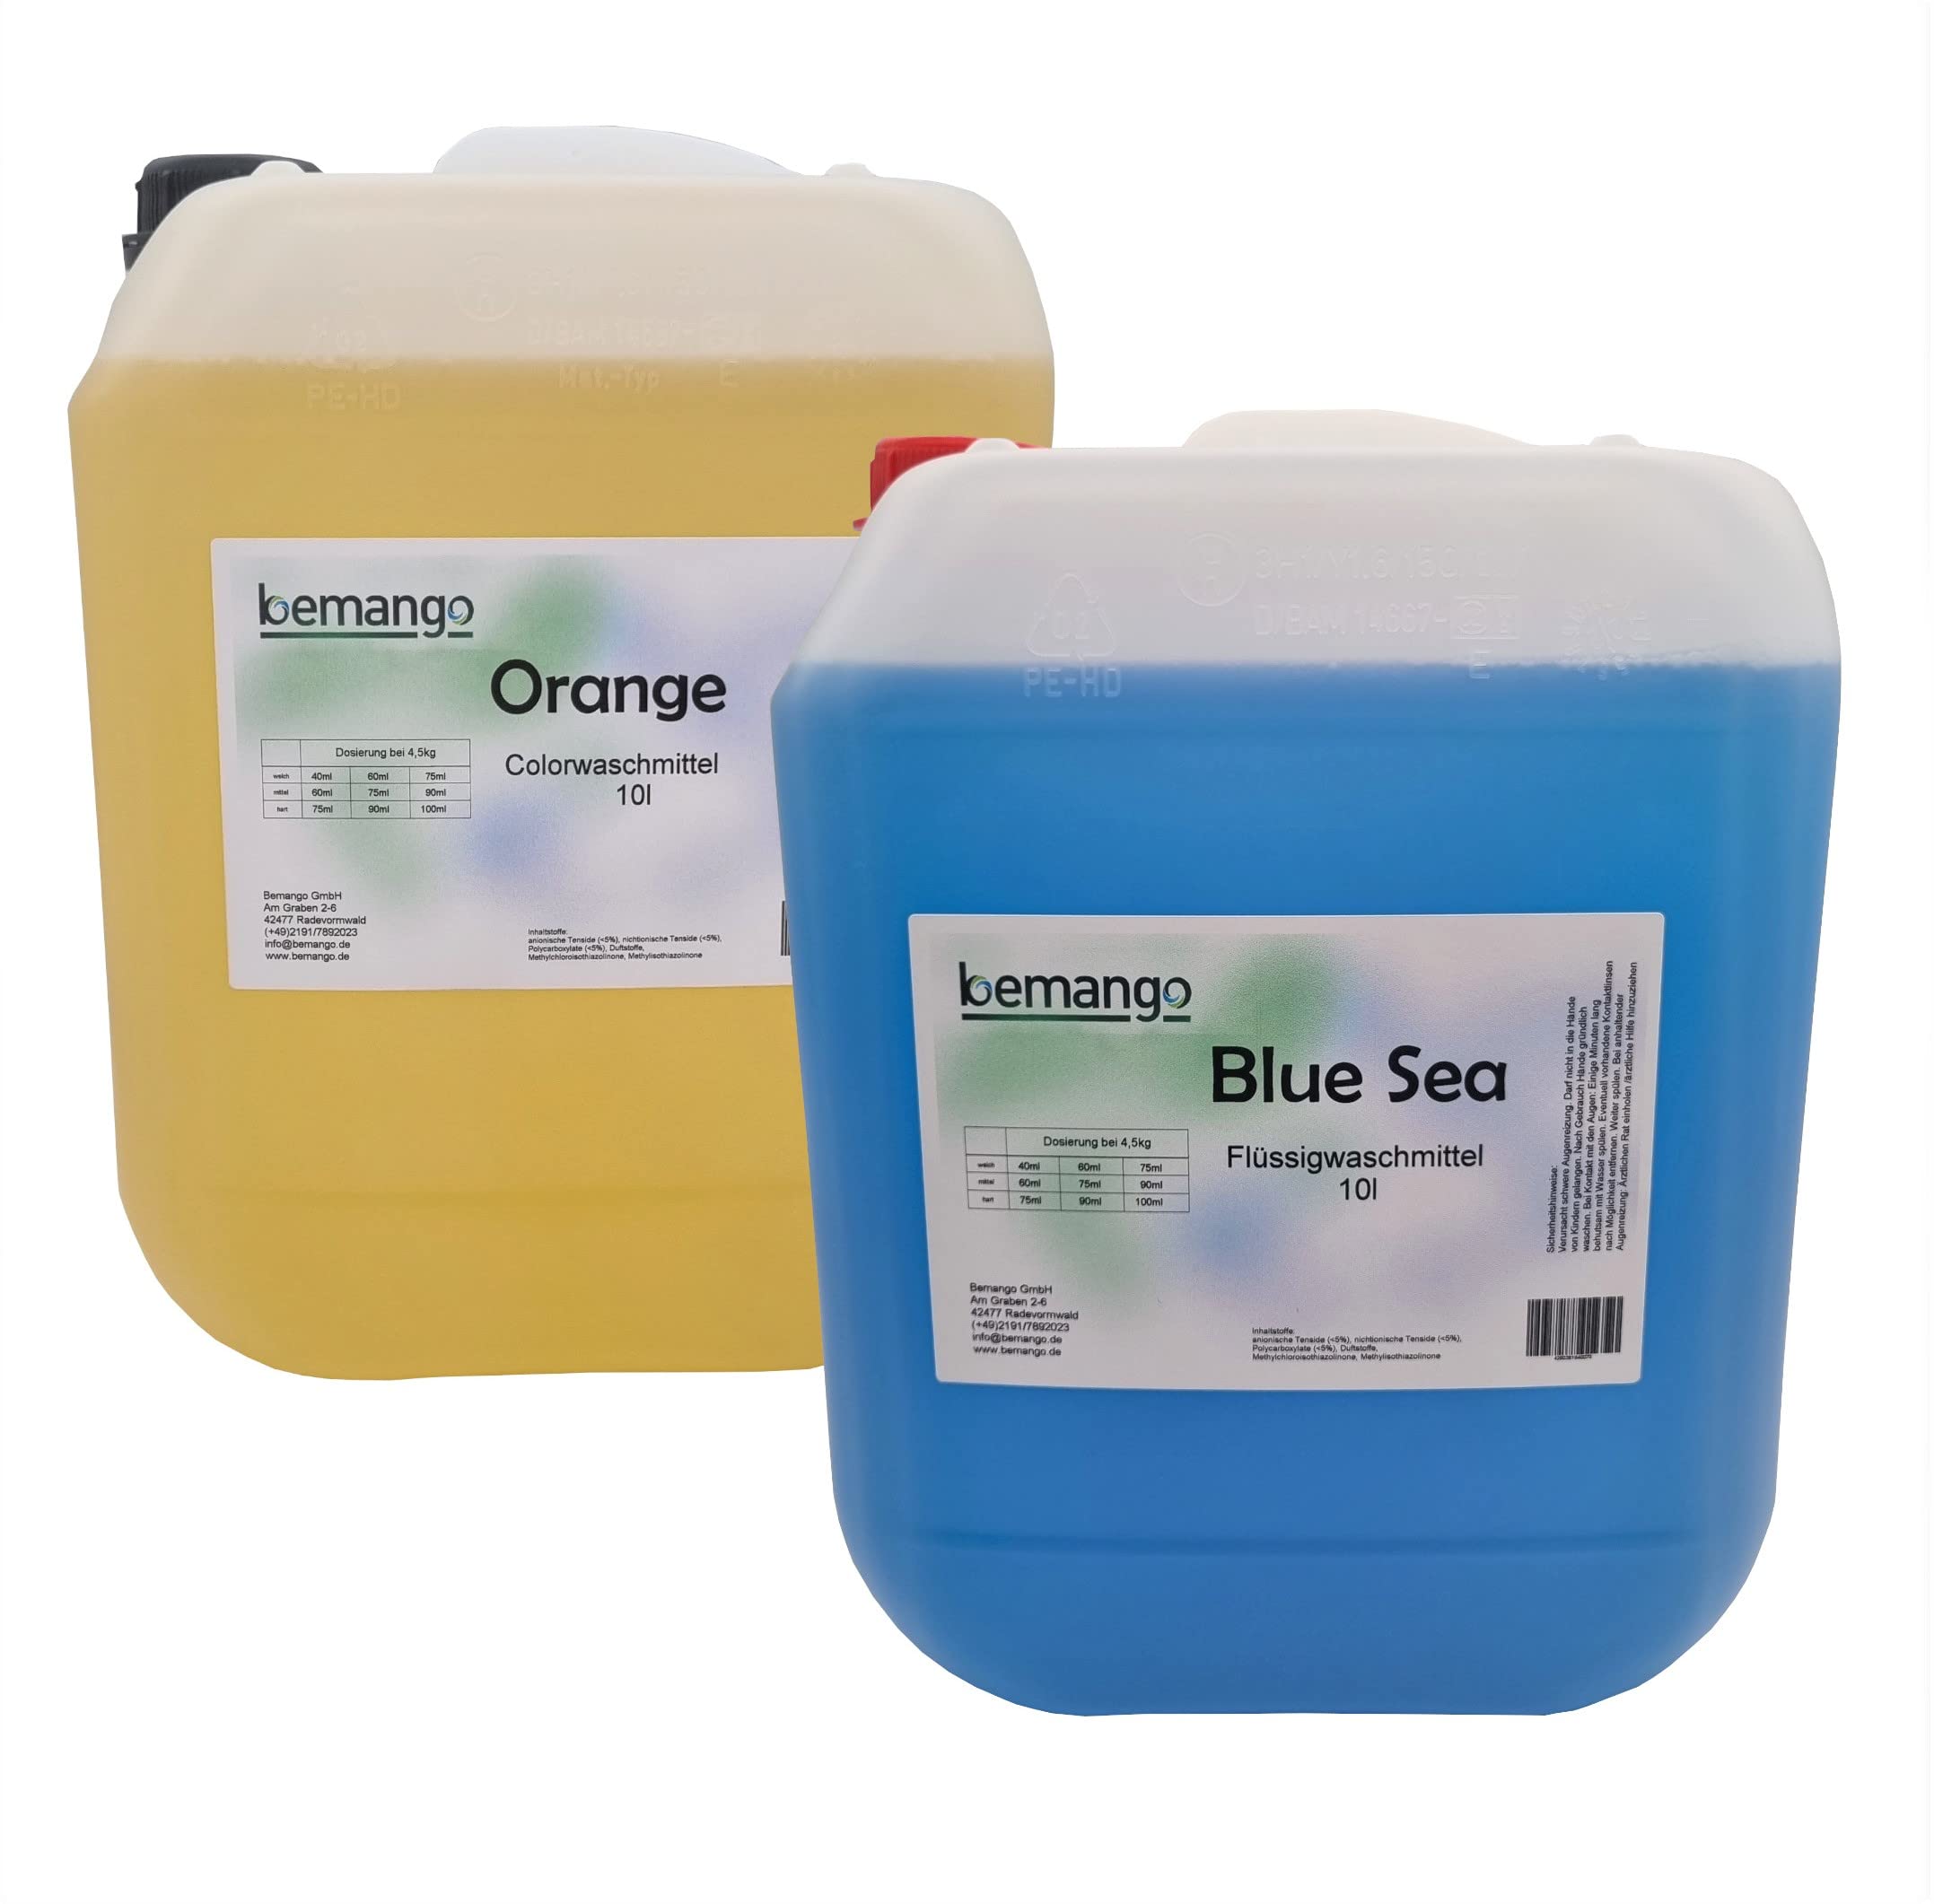 Red Orange 10 Liter Colorwaschmittel und Blue Sea 10 Liter Vollwaschmittel